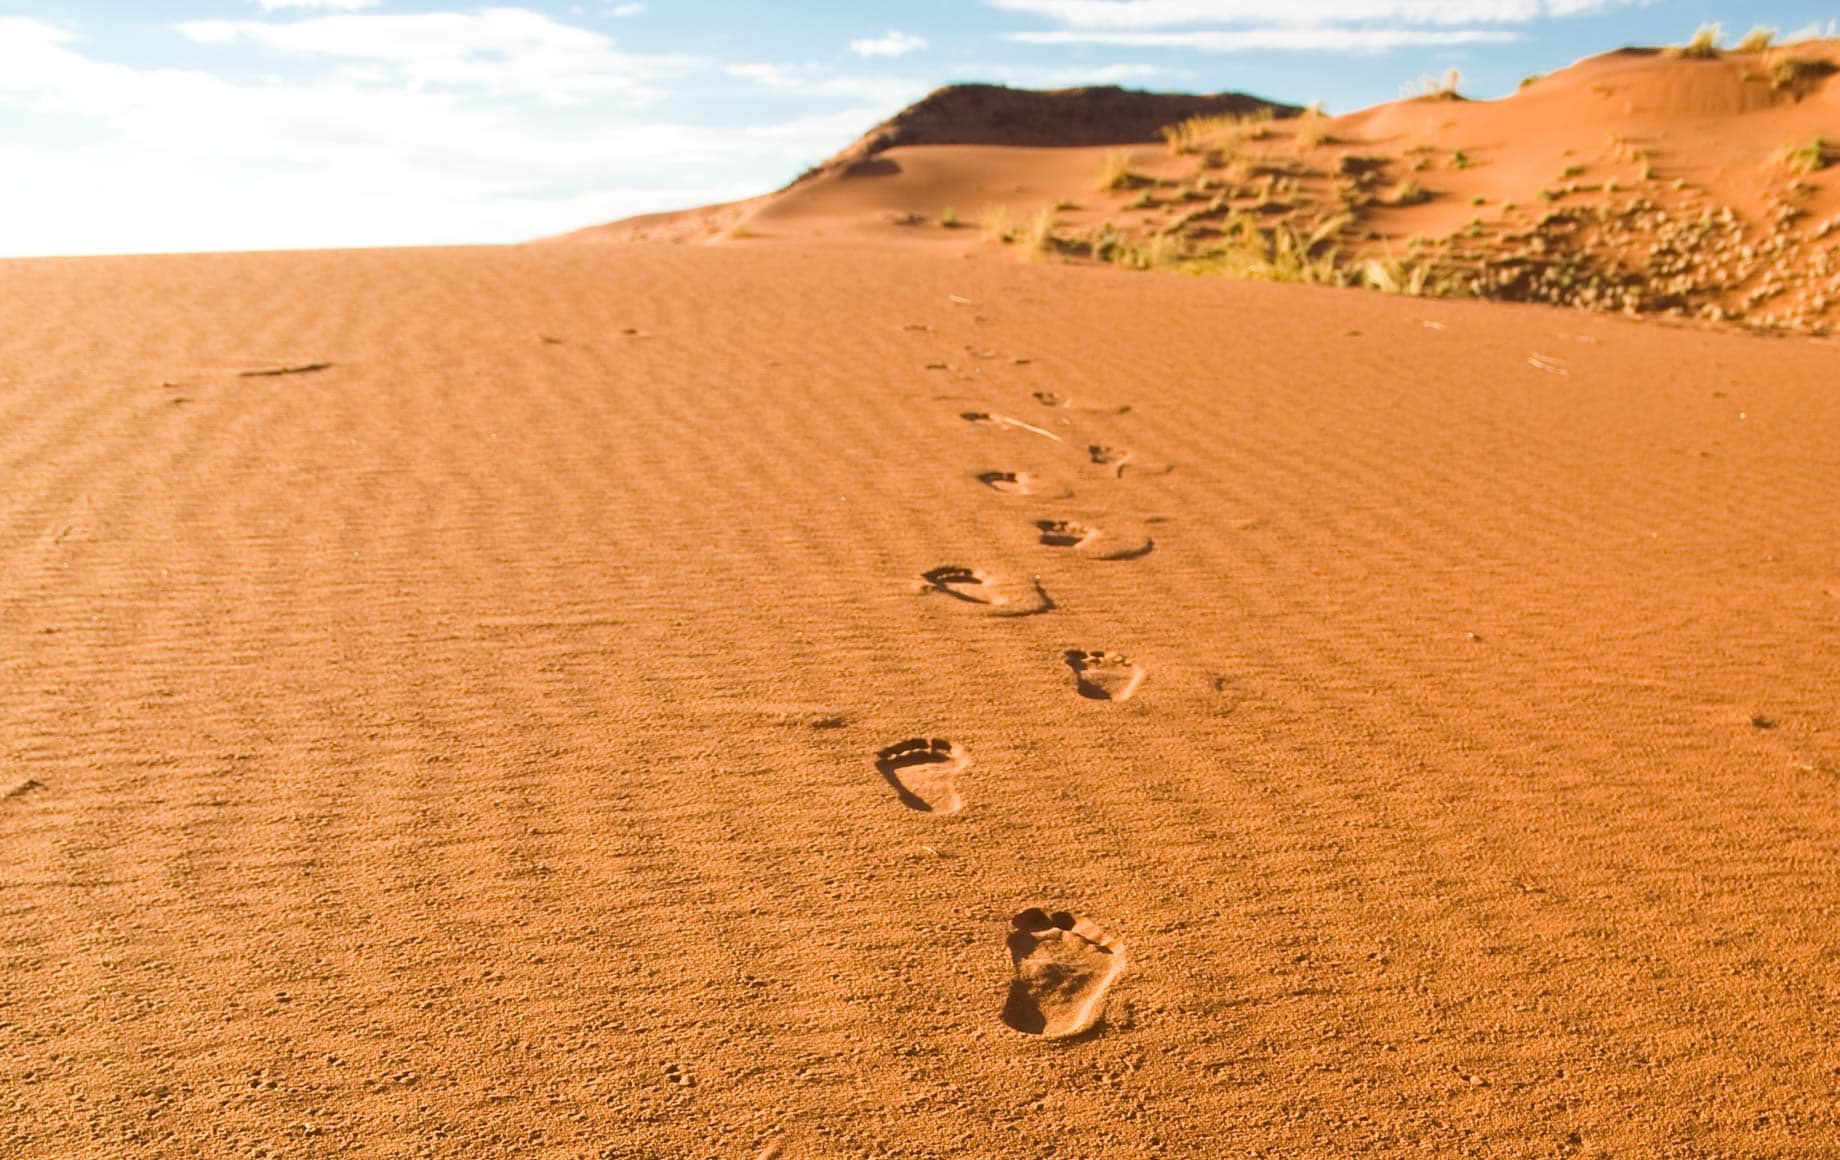 Footsteps on the desert sand in Sossusvlei Namib Desert